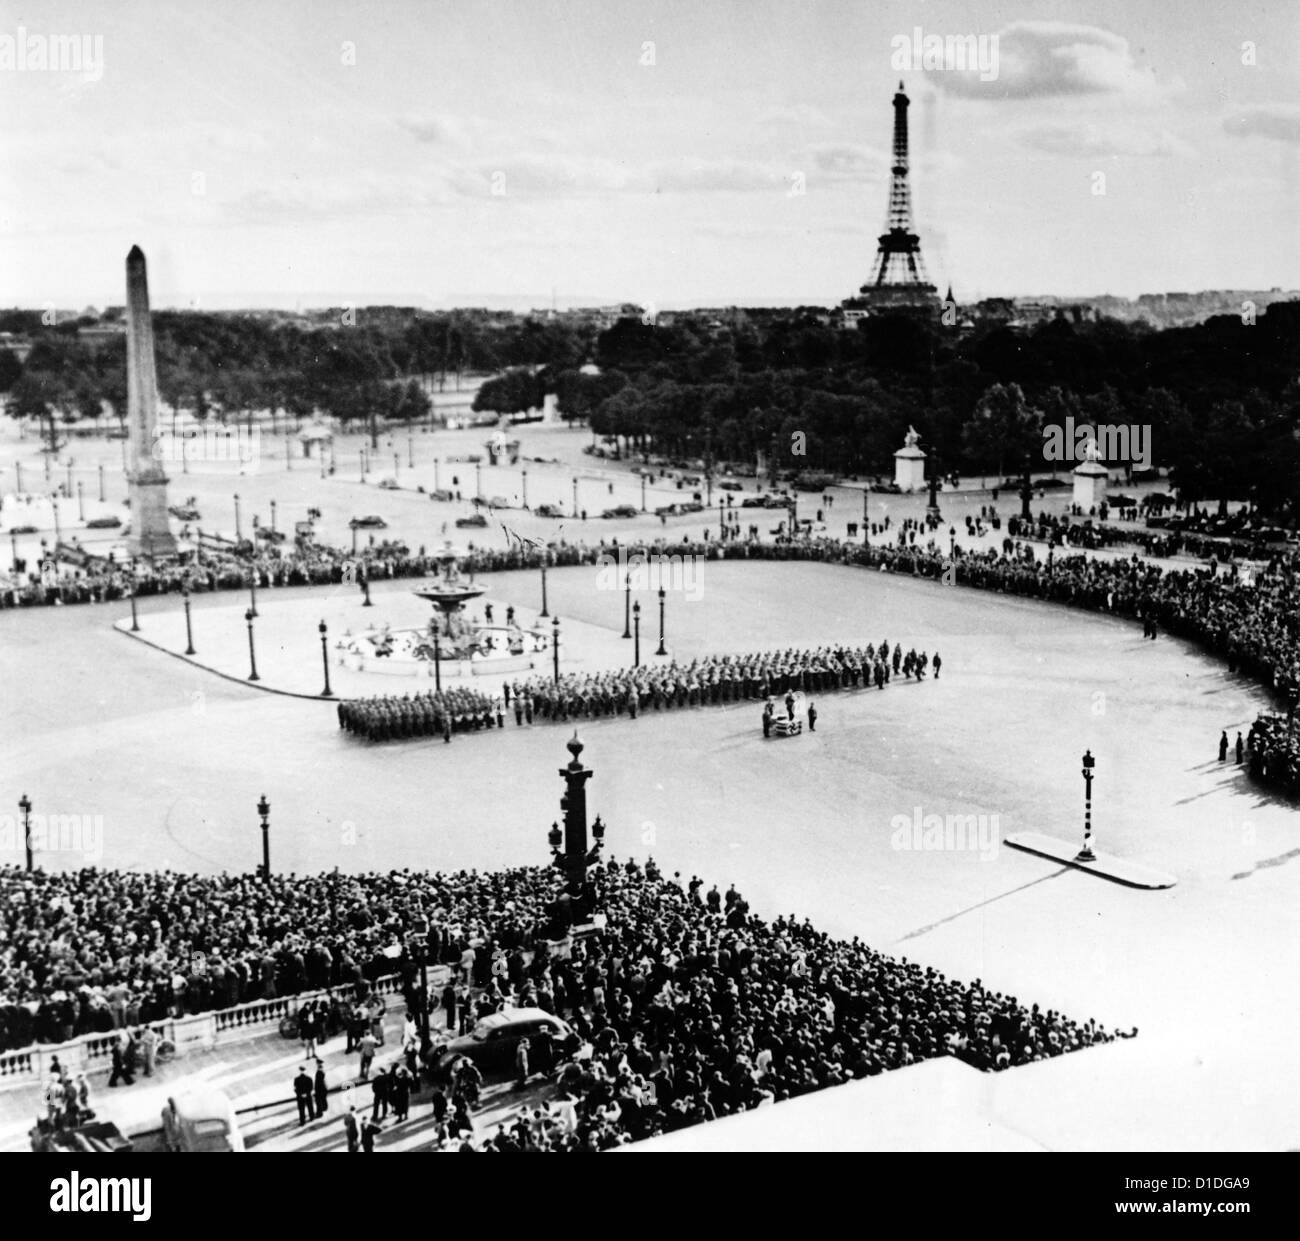 La foule est photographiée lors d'un concert d'un groupe militaire de l'Armée de l'Air allemande sur la place de la Concorde à Paris en juillet 1940. Fotoarchiv für Zeitgeschichte Banque D'Images